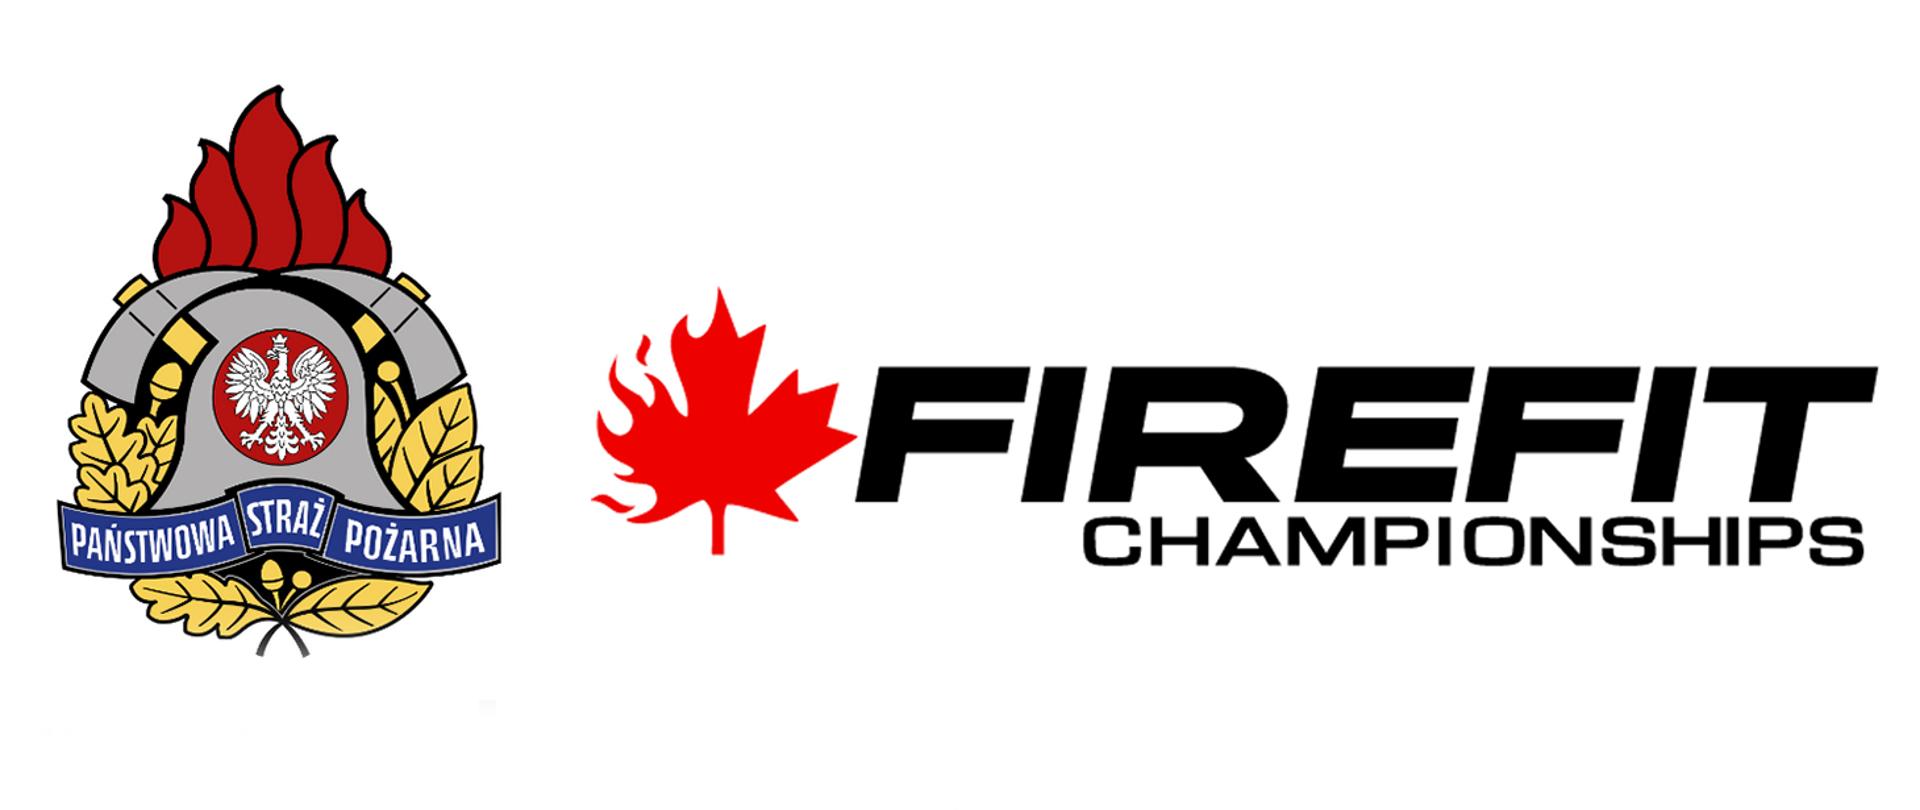 Baner loga PSP i FIREFIT Canada